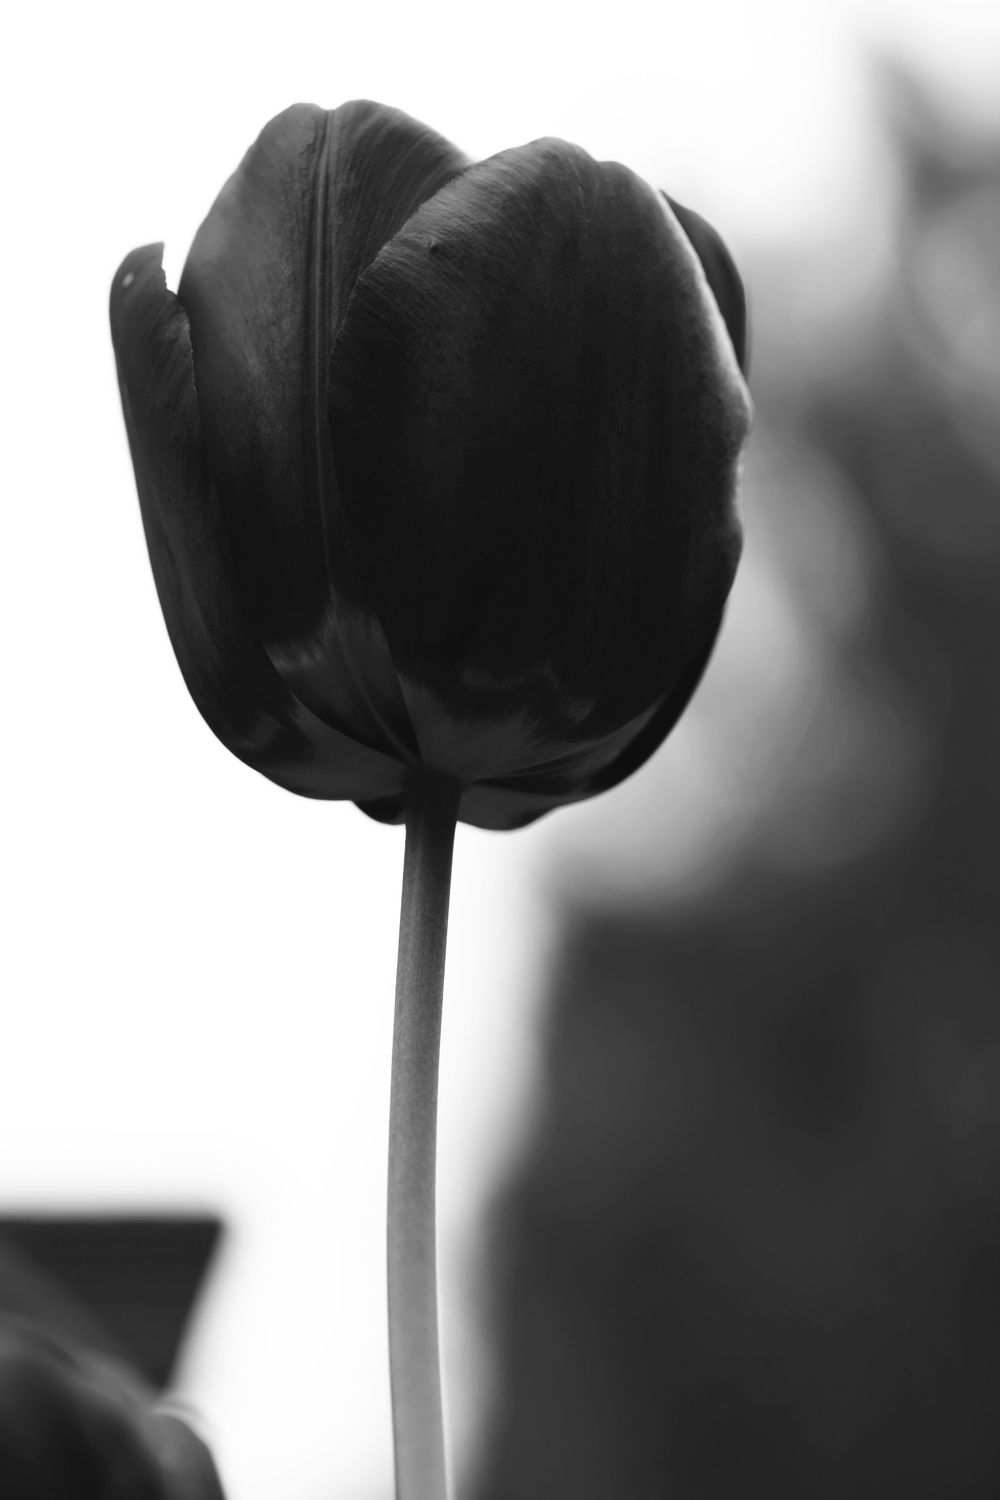 Bild mit Blumen, Blume, Tulpe, Tulpen, schwarz weiß, SW